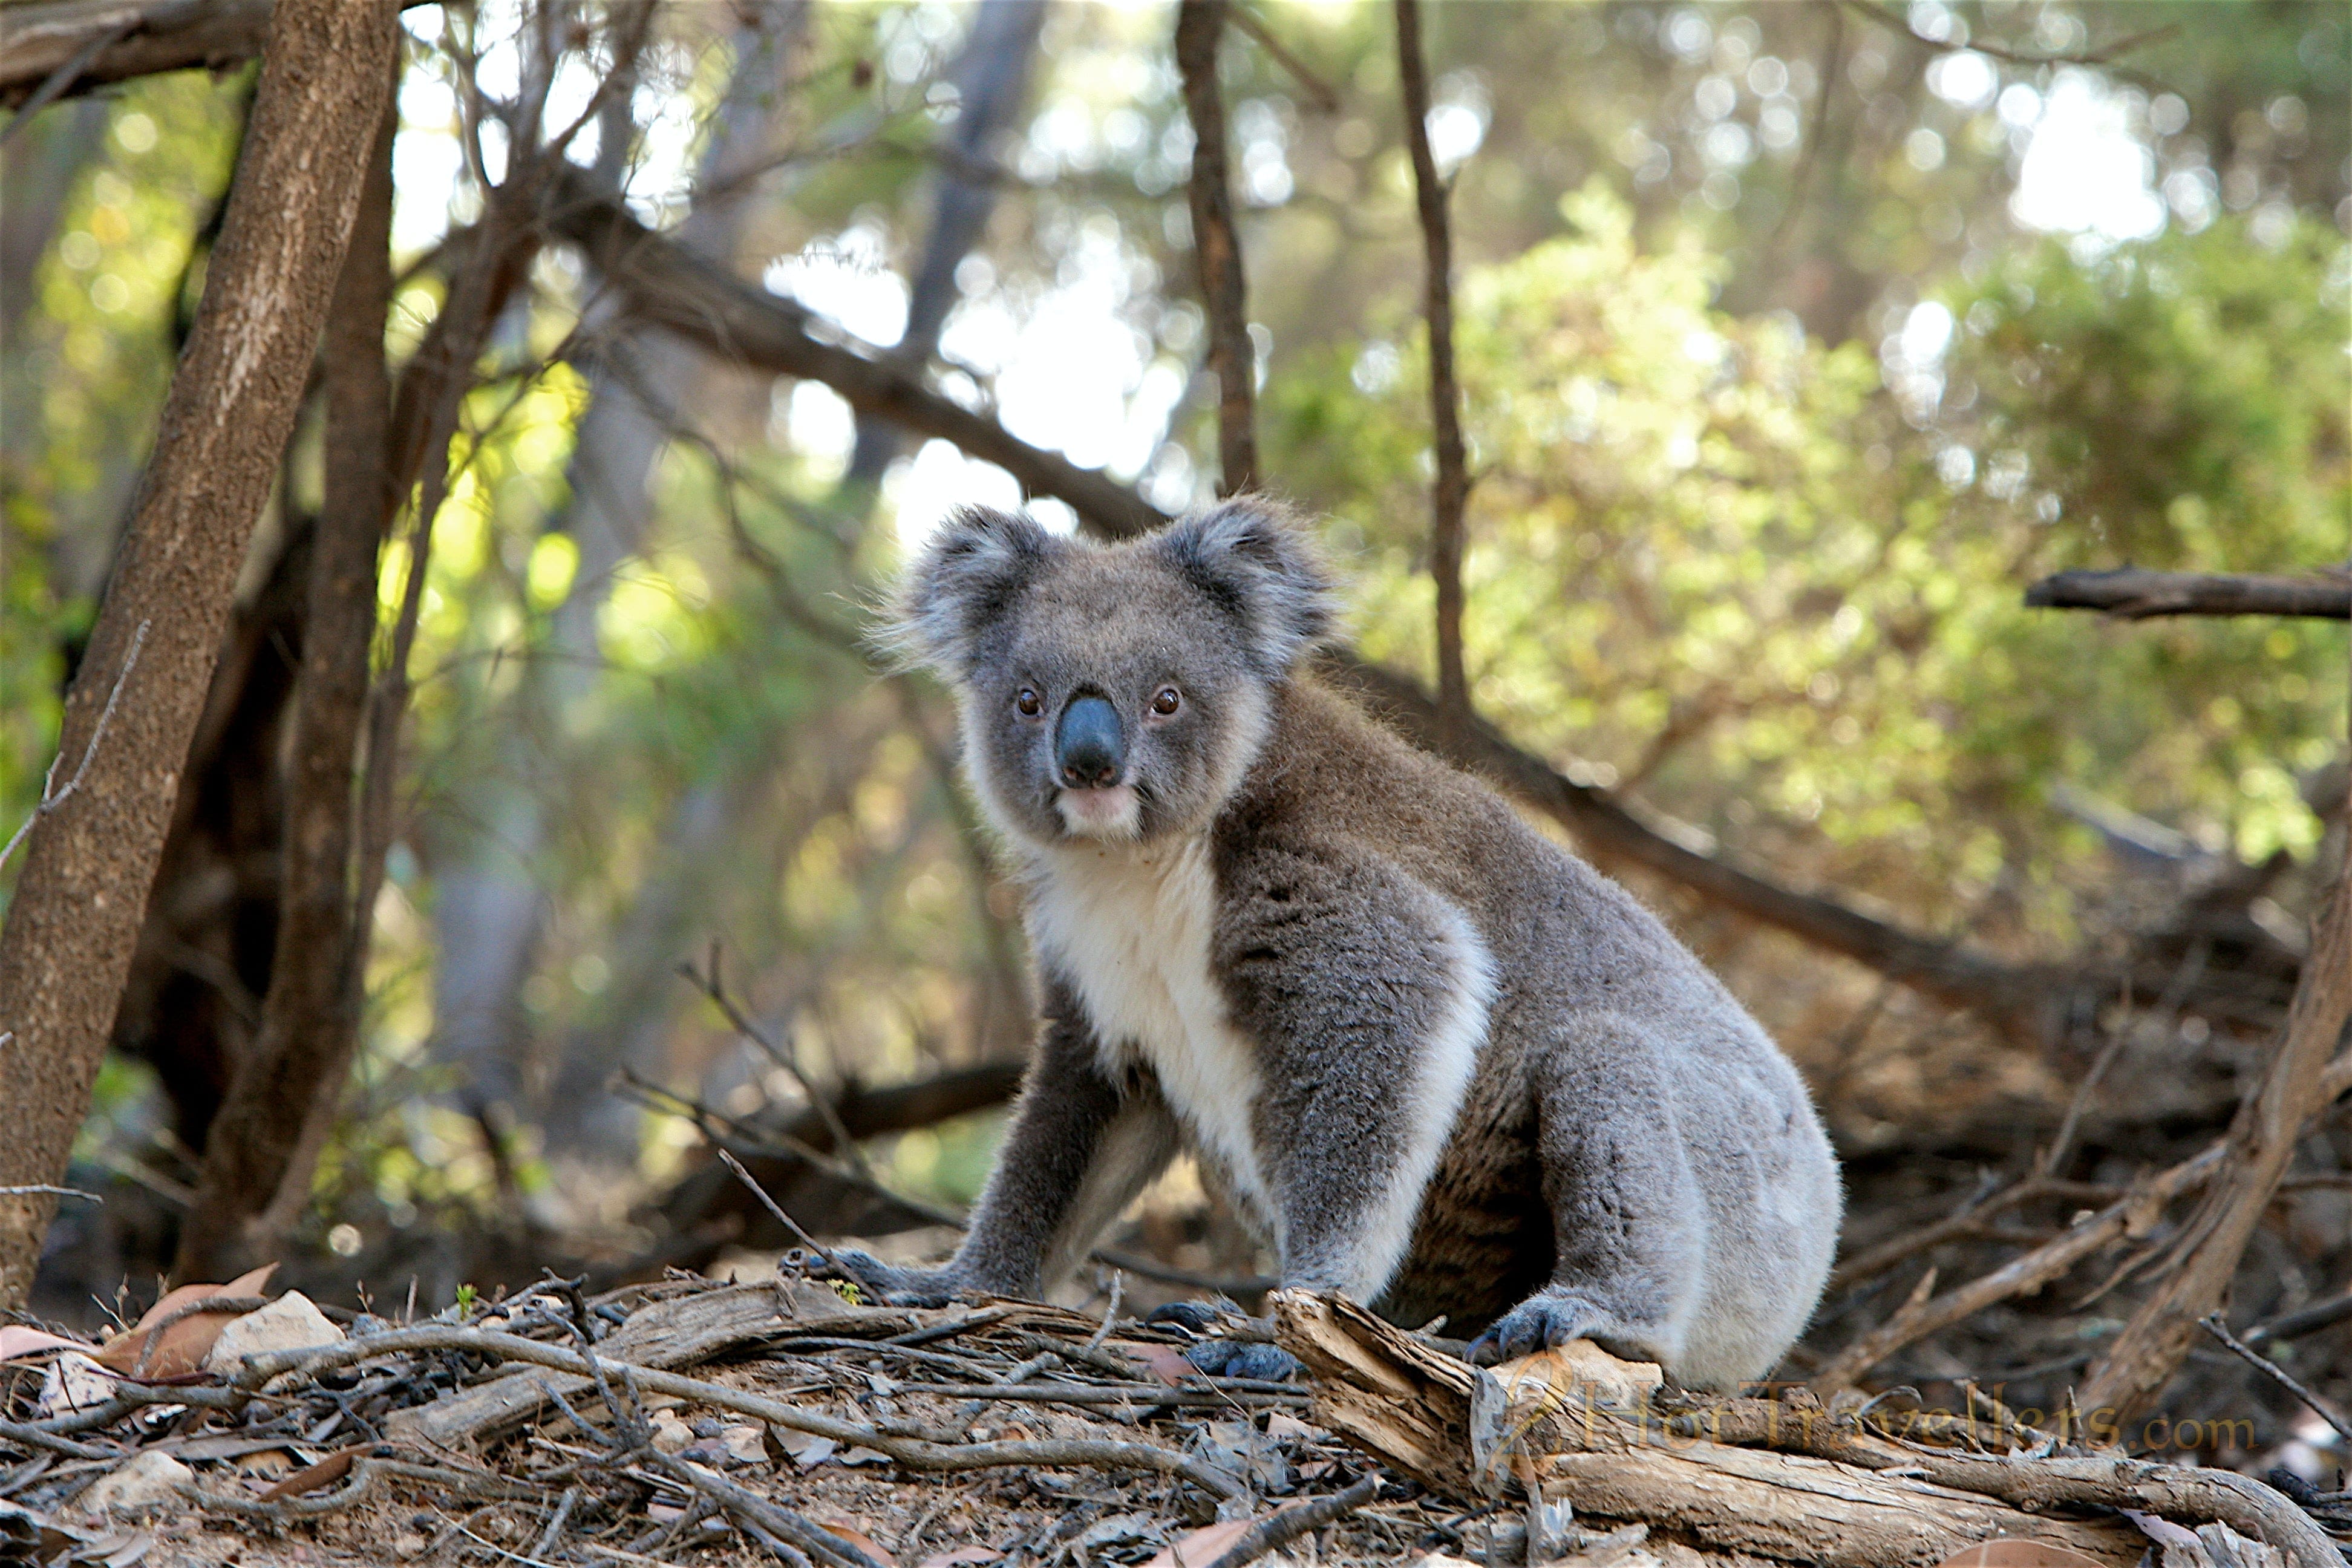 Koala looking at us Koala Endangered: Interesting Facts